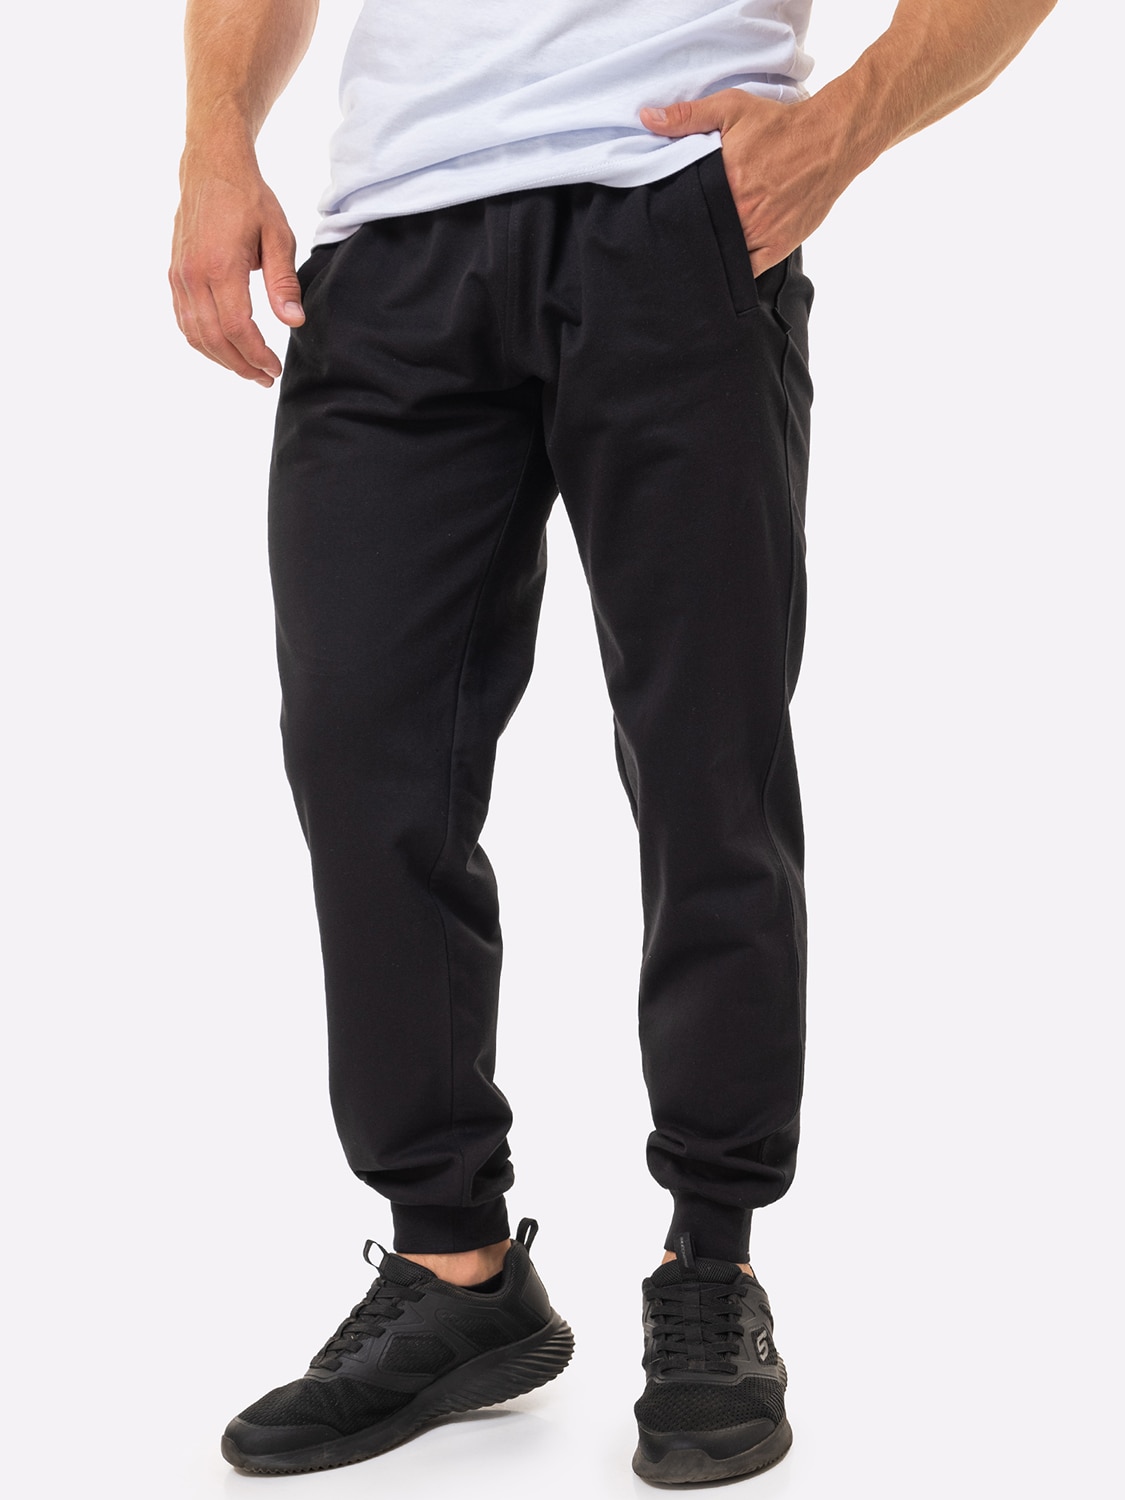 Спортивные брюки мужские HappyFox 9118 черные 56 RU